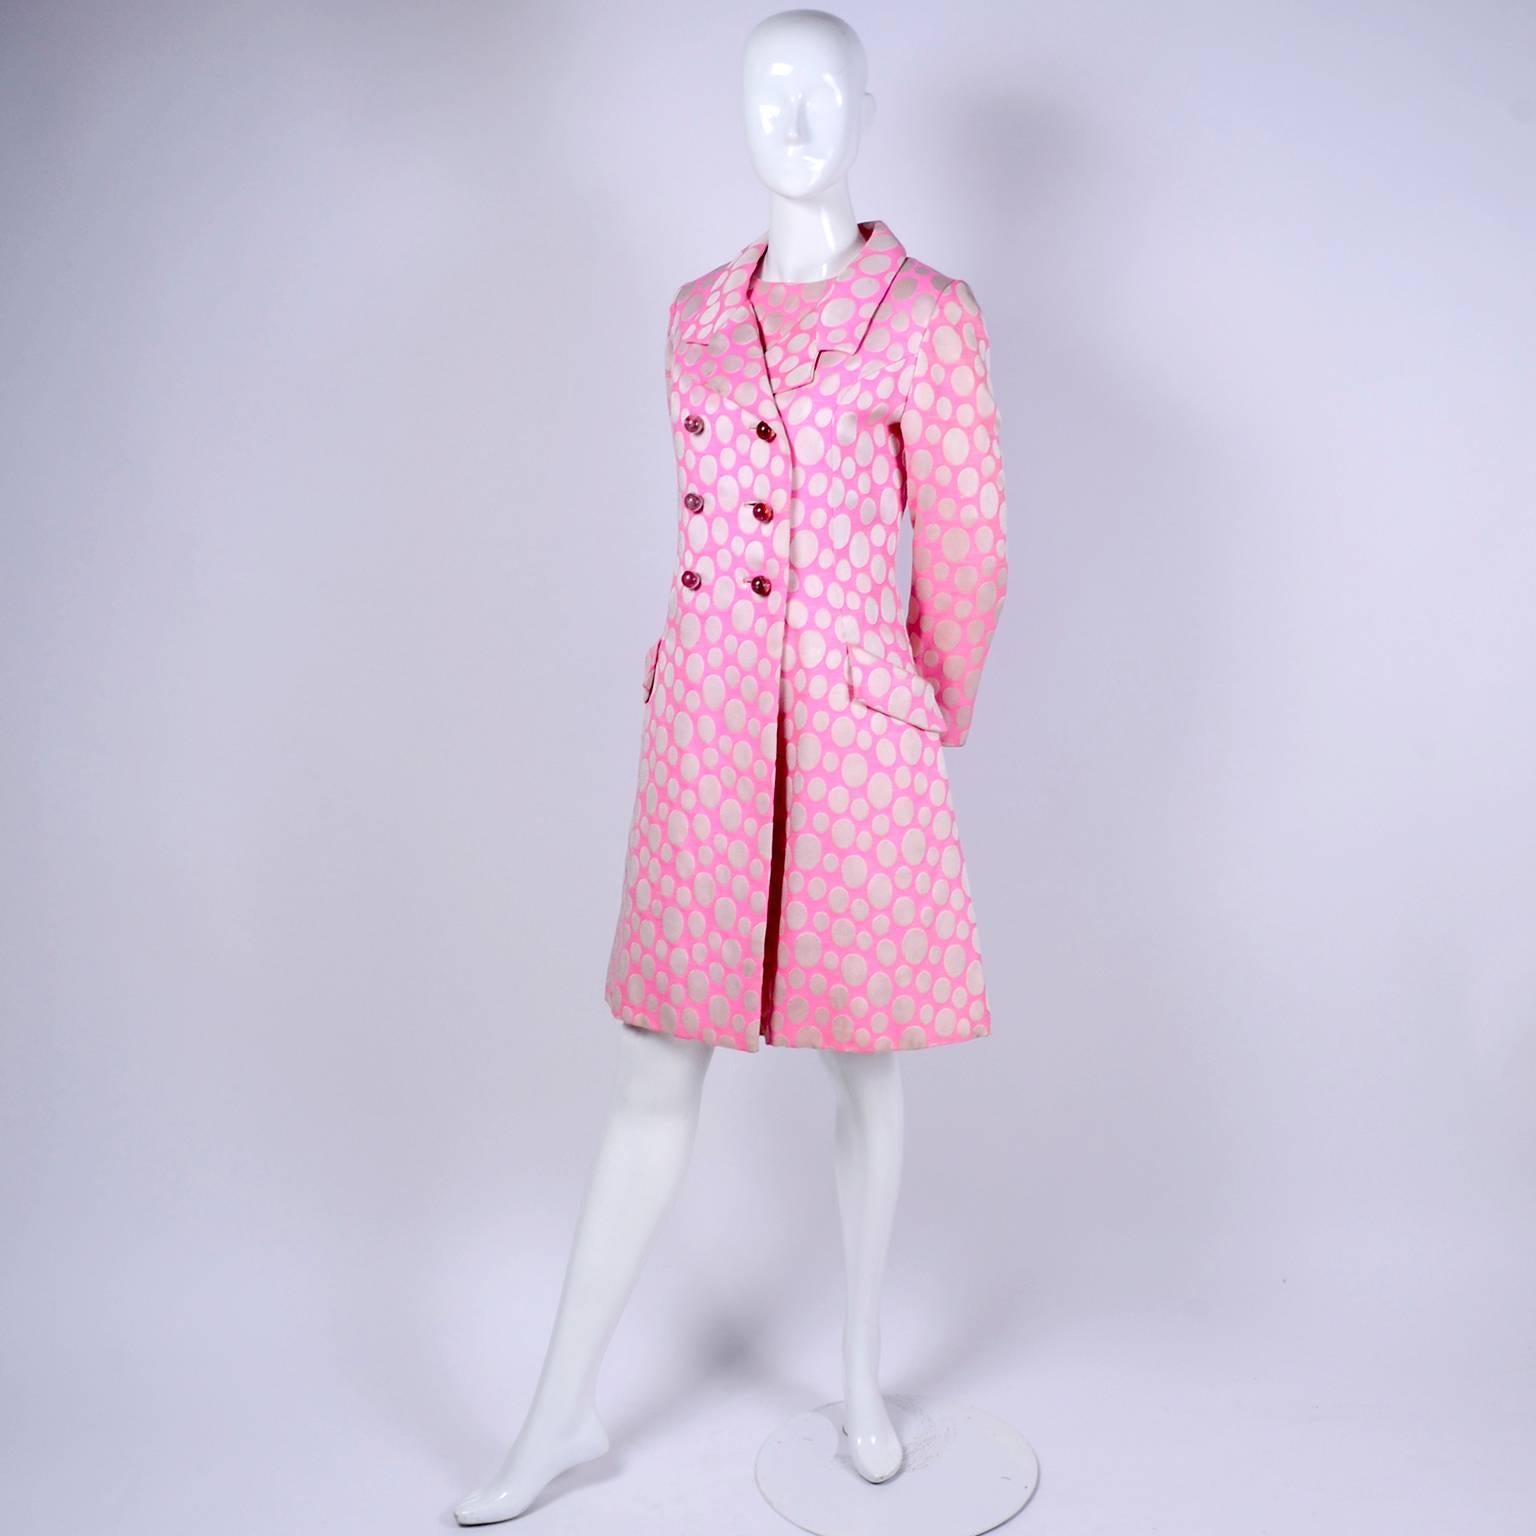 1960s Mod Vintage Pink Polka Dot Sleeveless Dress & Coat Suit Crest Room 5